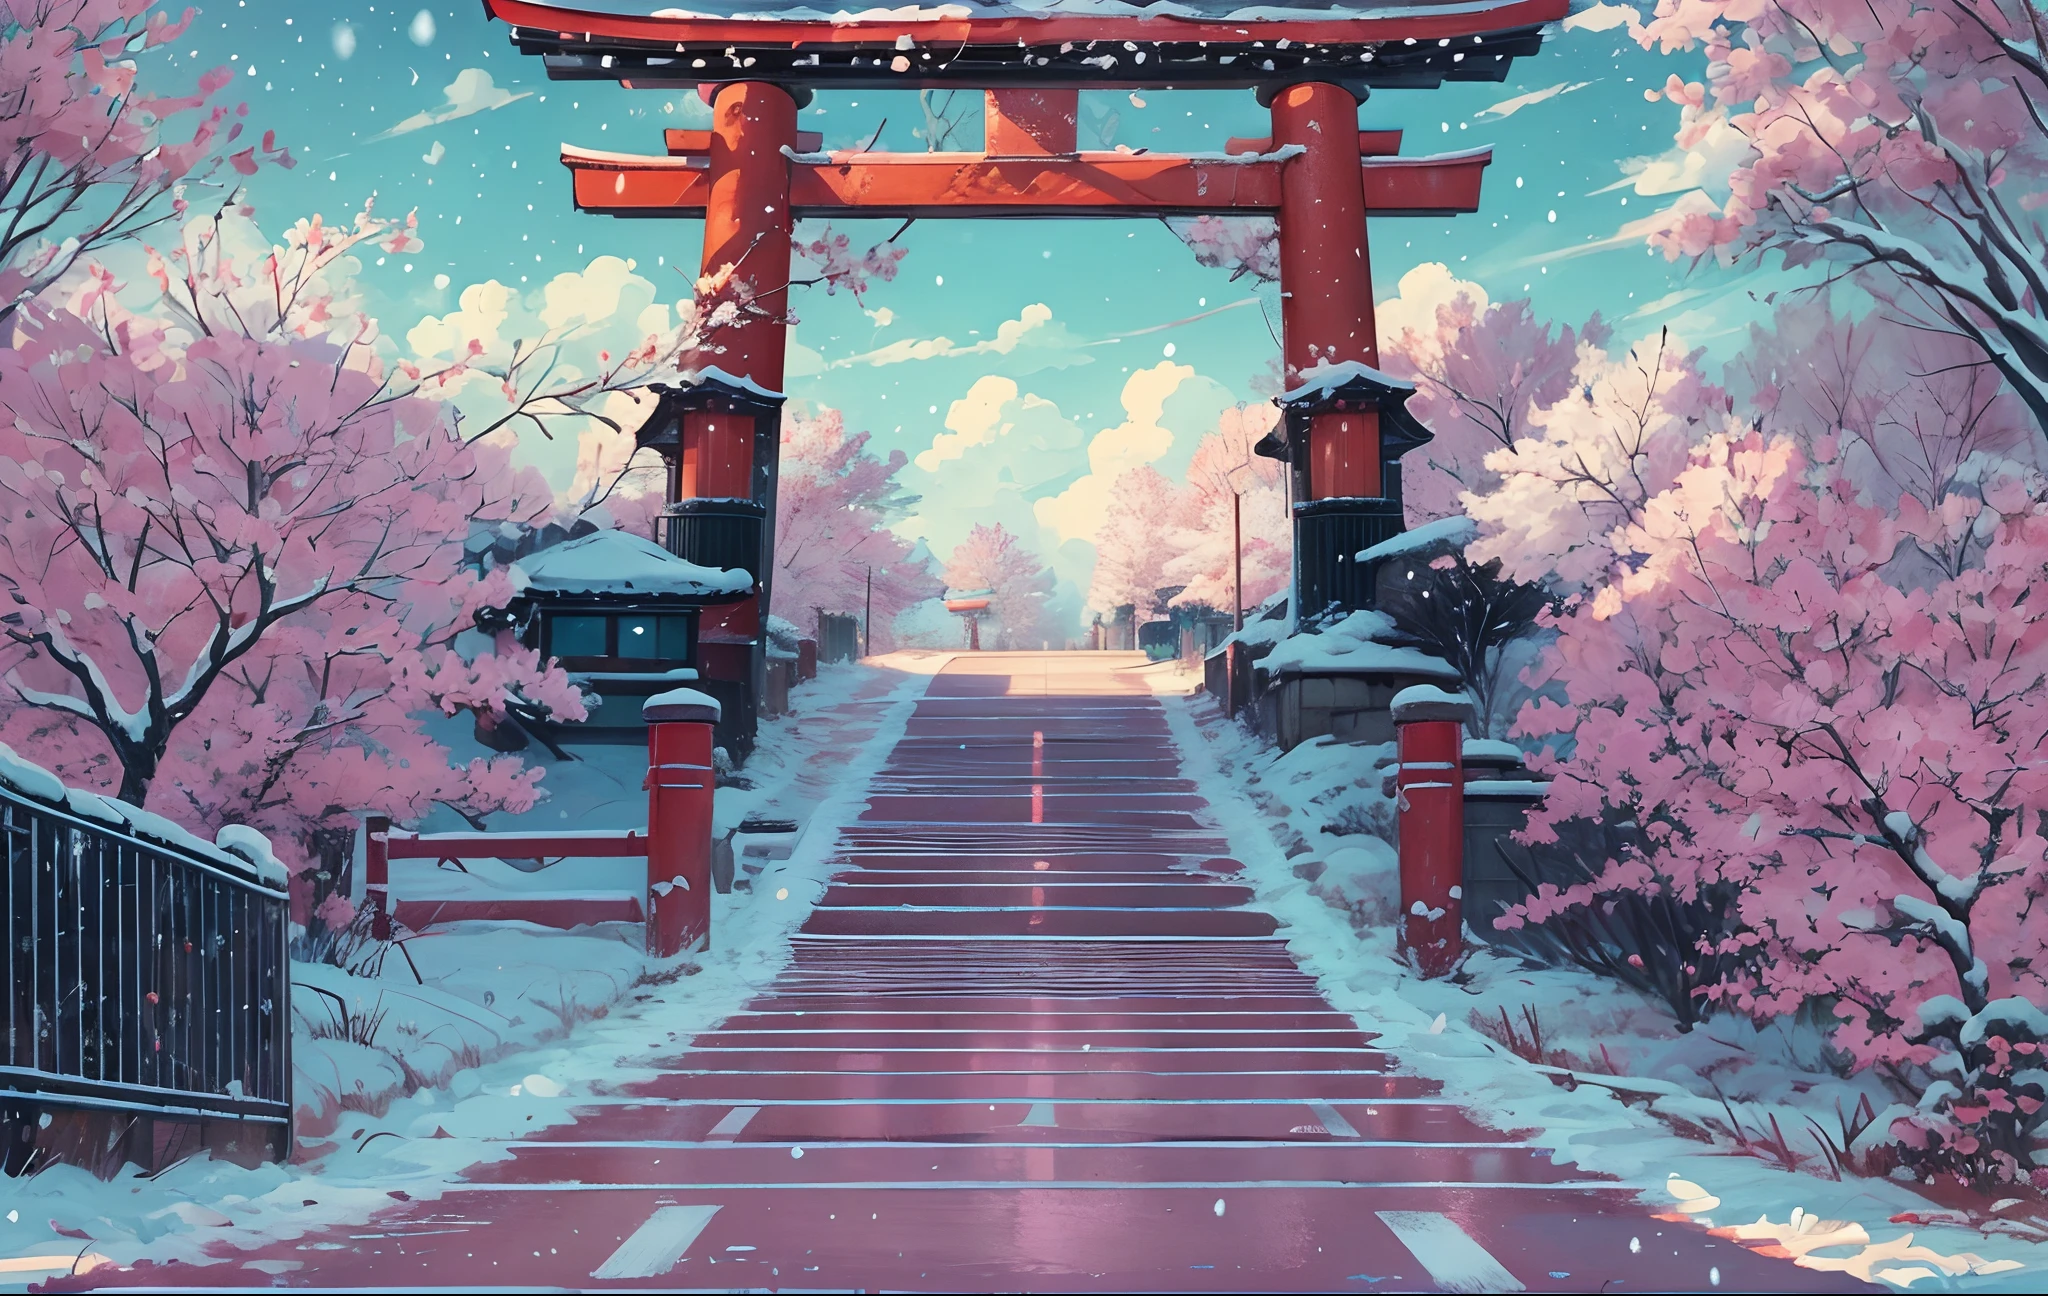 chef-d&#39;œuvre, art conceptuel, plan large, panoramique, (une rue pleine de graffitis la nuit avec un torii au loin), (hiver), neigeux, une peinture mate détaillée, par Makoto Shinkai, prise de vue grand écran, allée, chemin bordé d&#39;arbres sakura, le film d&#39;animation de Miyazaki, nuit sans fin, sakura le long de la rue, art pour le film en couleur, Art animé numérique détaillé, (composition épique, proportion épique), HD